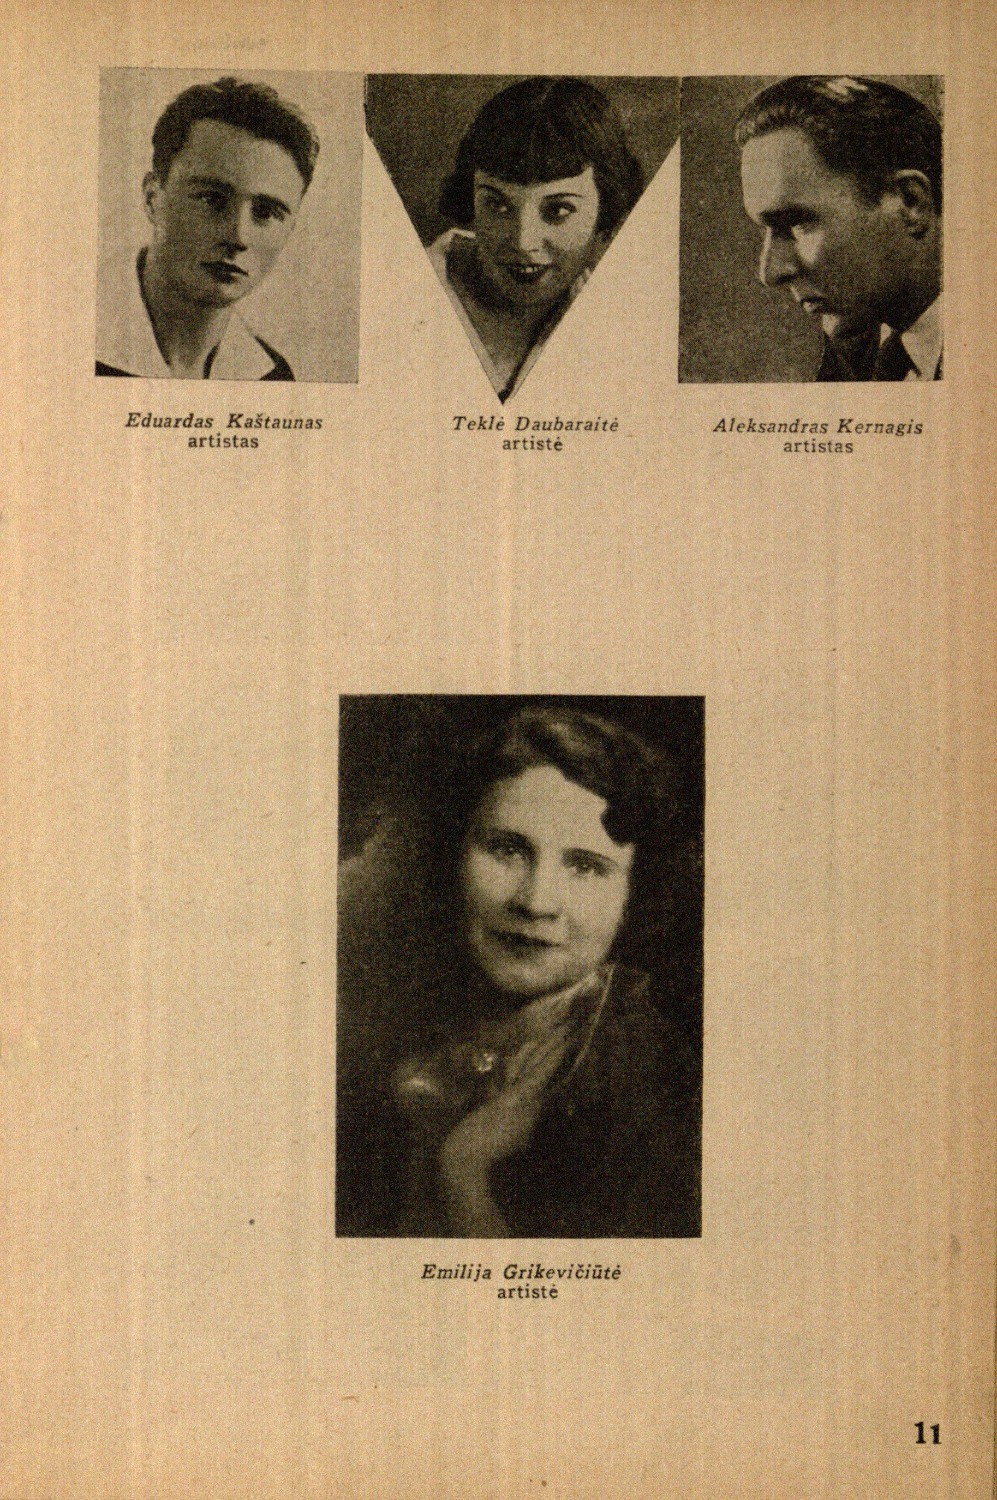 Eduardas Kaštaunas, artistas, Teklė Daubaraitė, artistė, Aleksandras Kernagis, artistas, Emilija Grikevičiūtė // Meno dienos. – 1936, Nr. 18, p. 11.